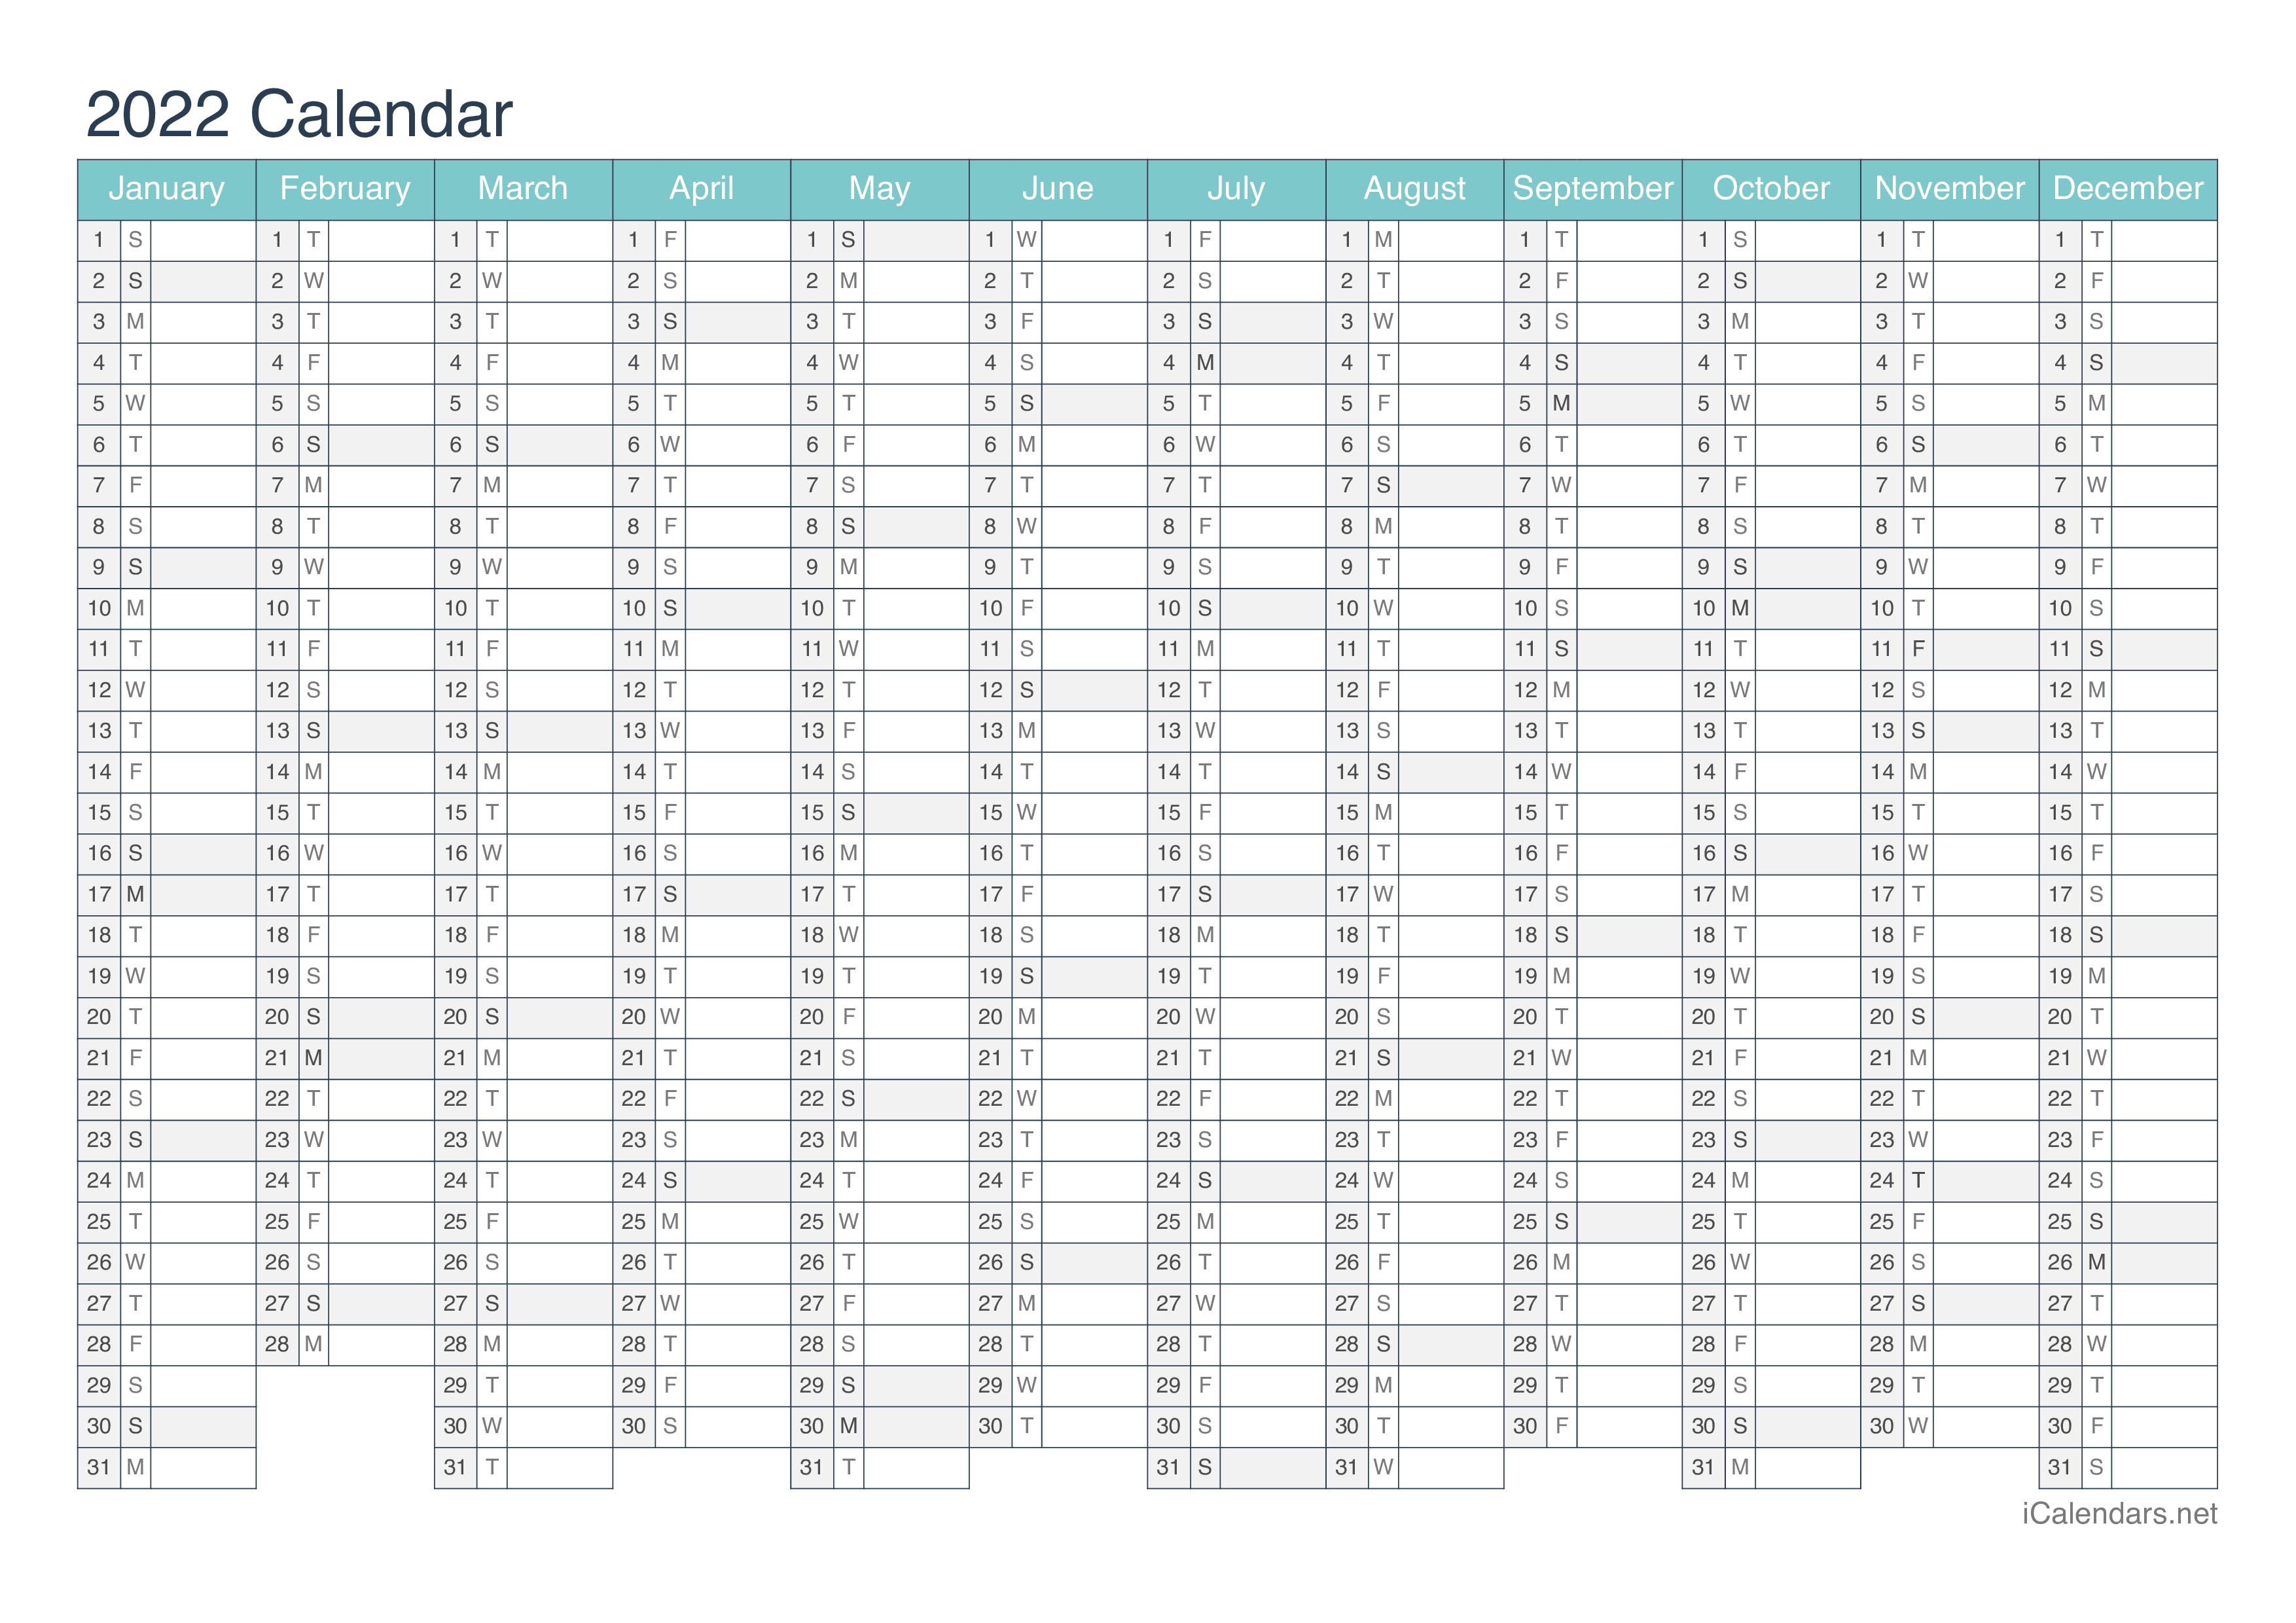 2022 52 Week Calendar Excel 2022 Printable Calendar - Pdf Or Excel - Icalendars.net